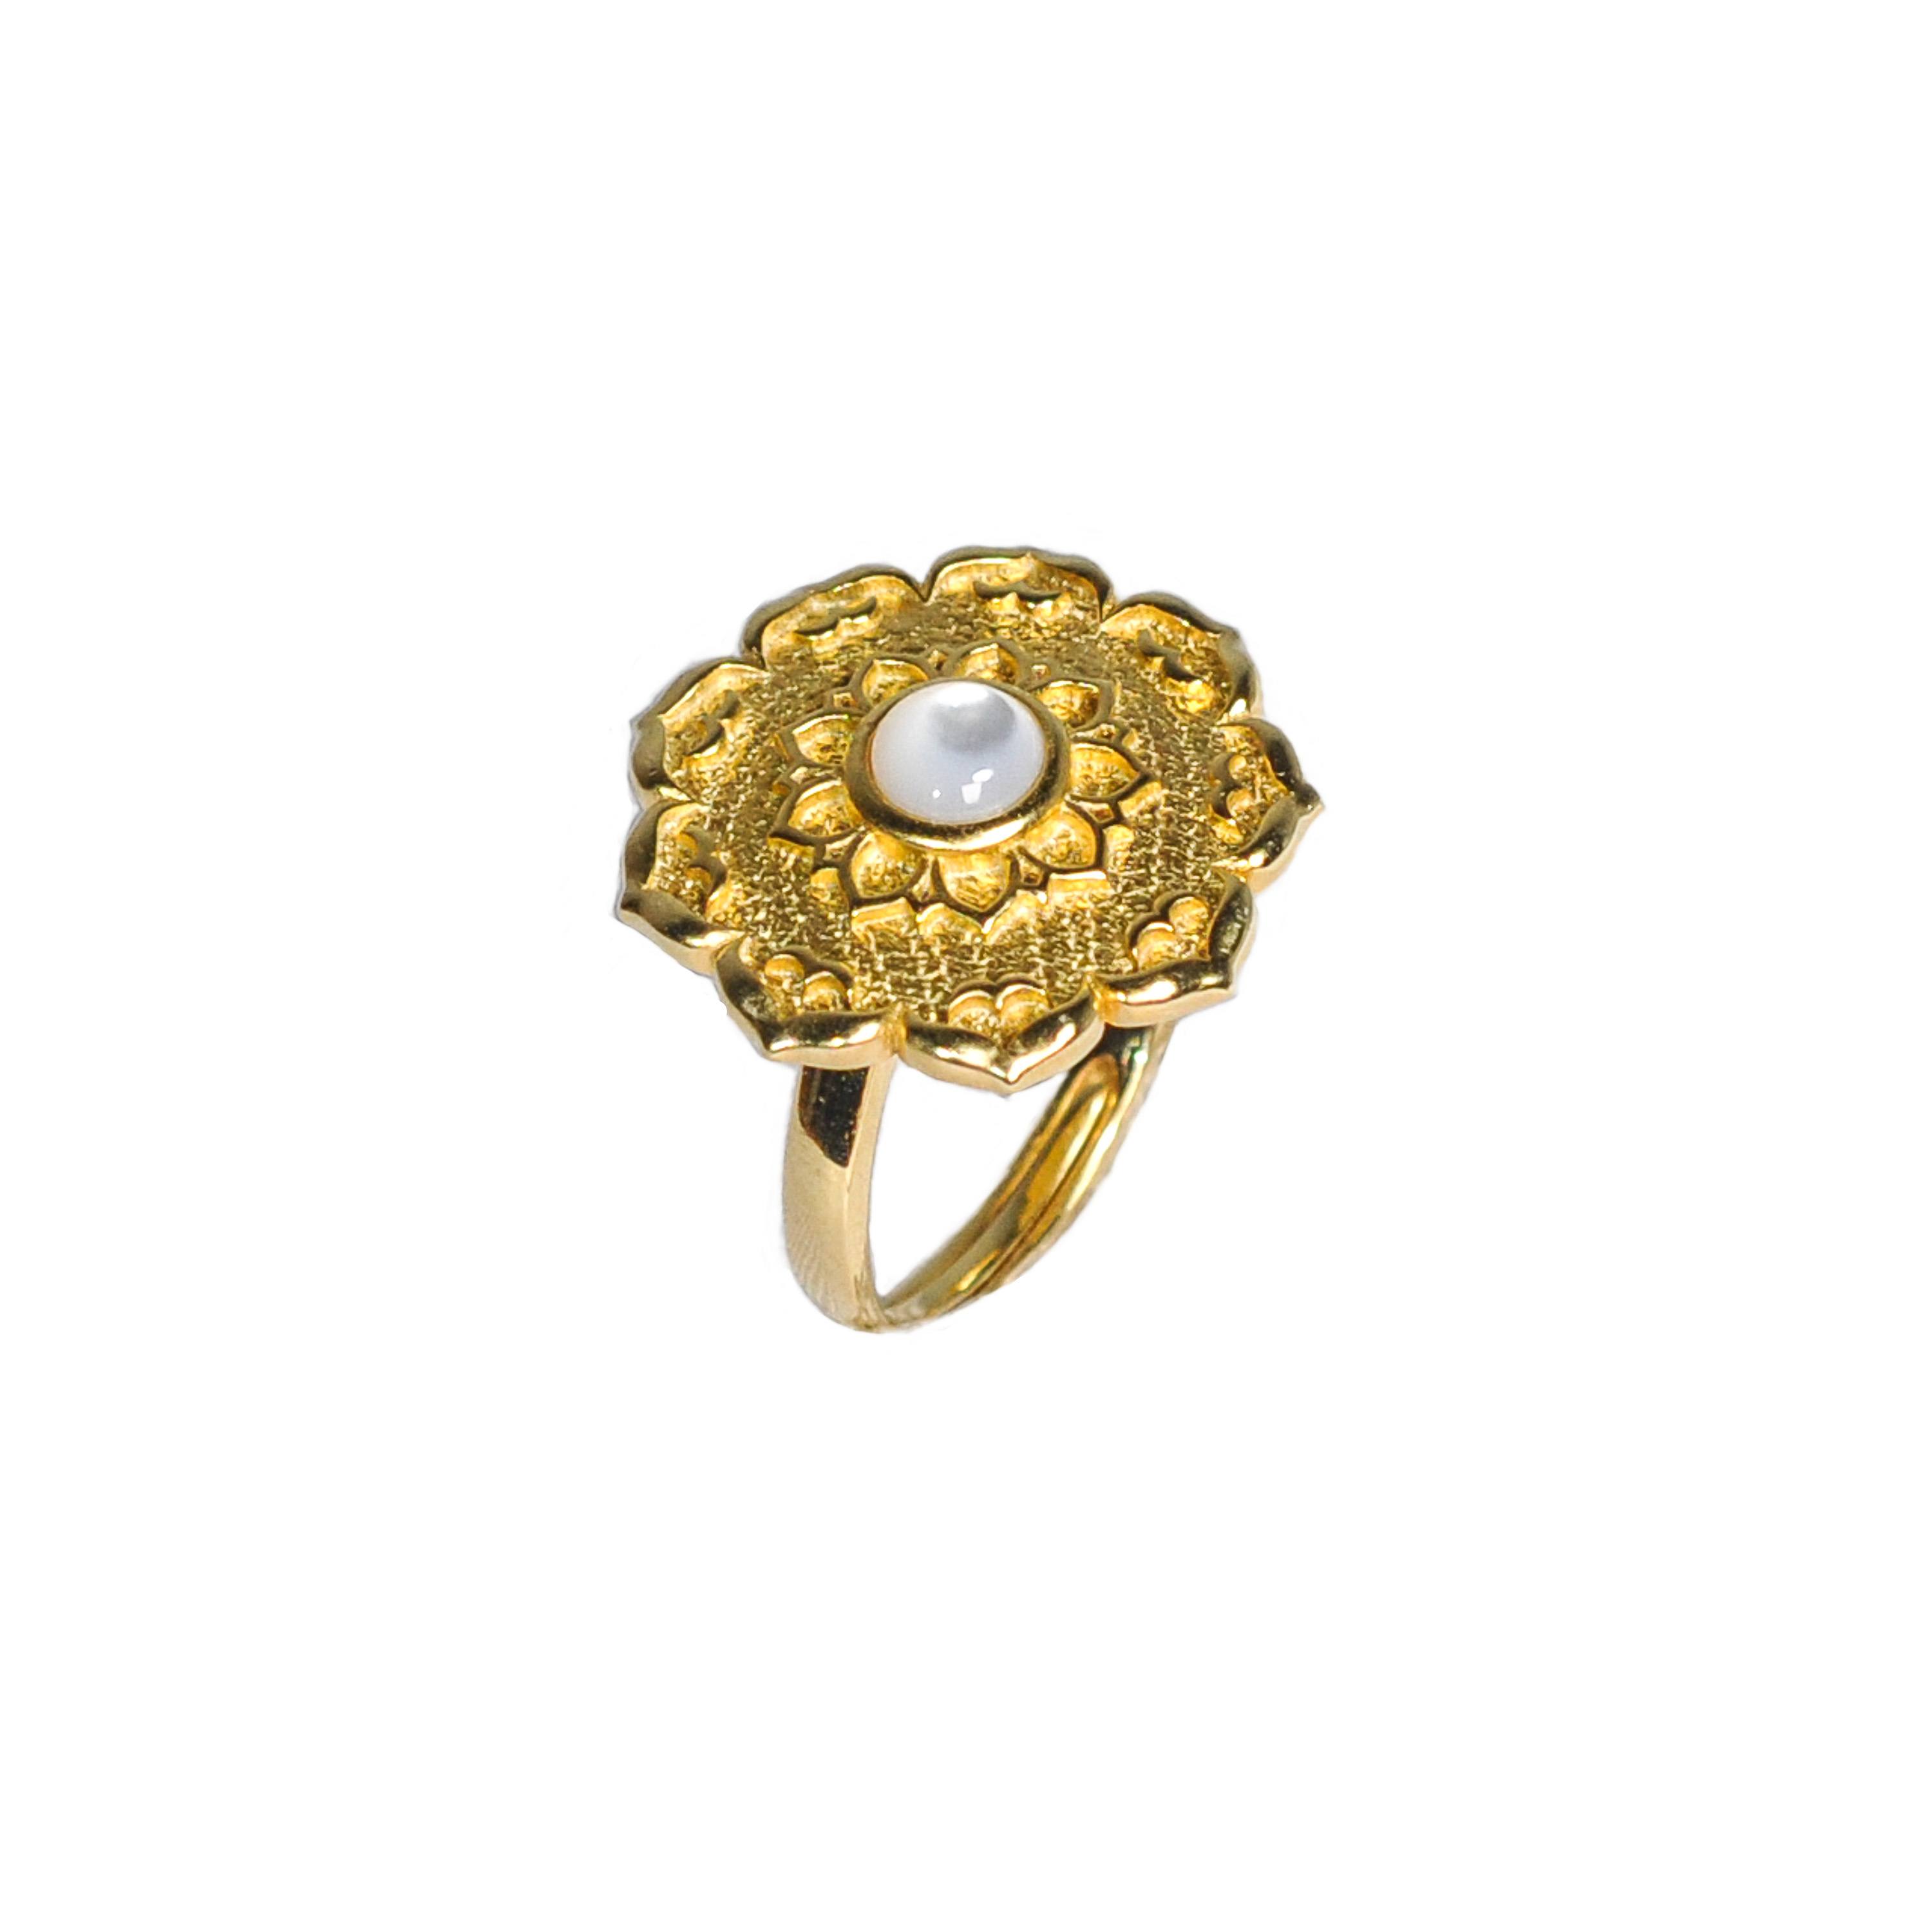 Buy Lotus Flower Ring Online in India | Kasturi Diamond